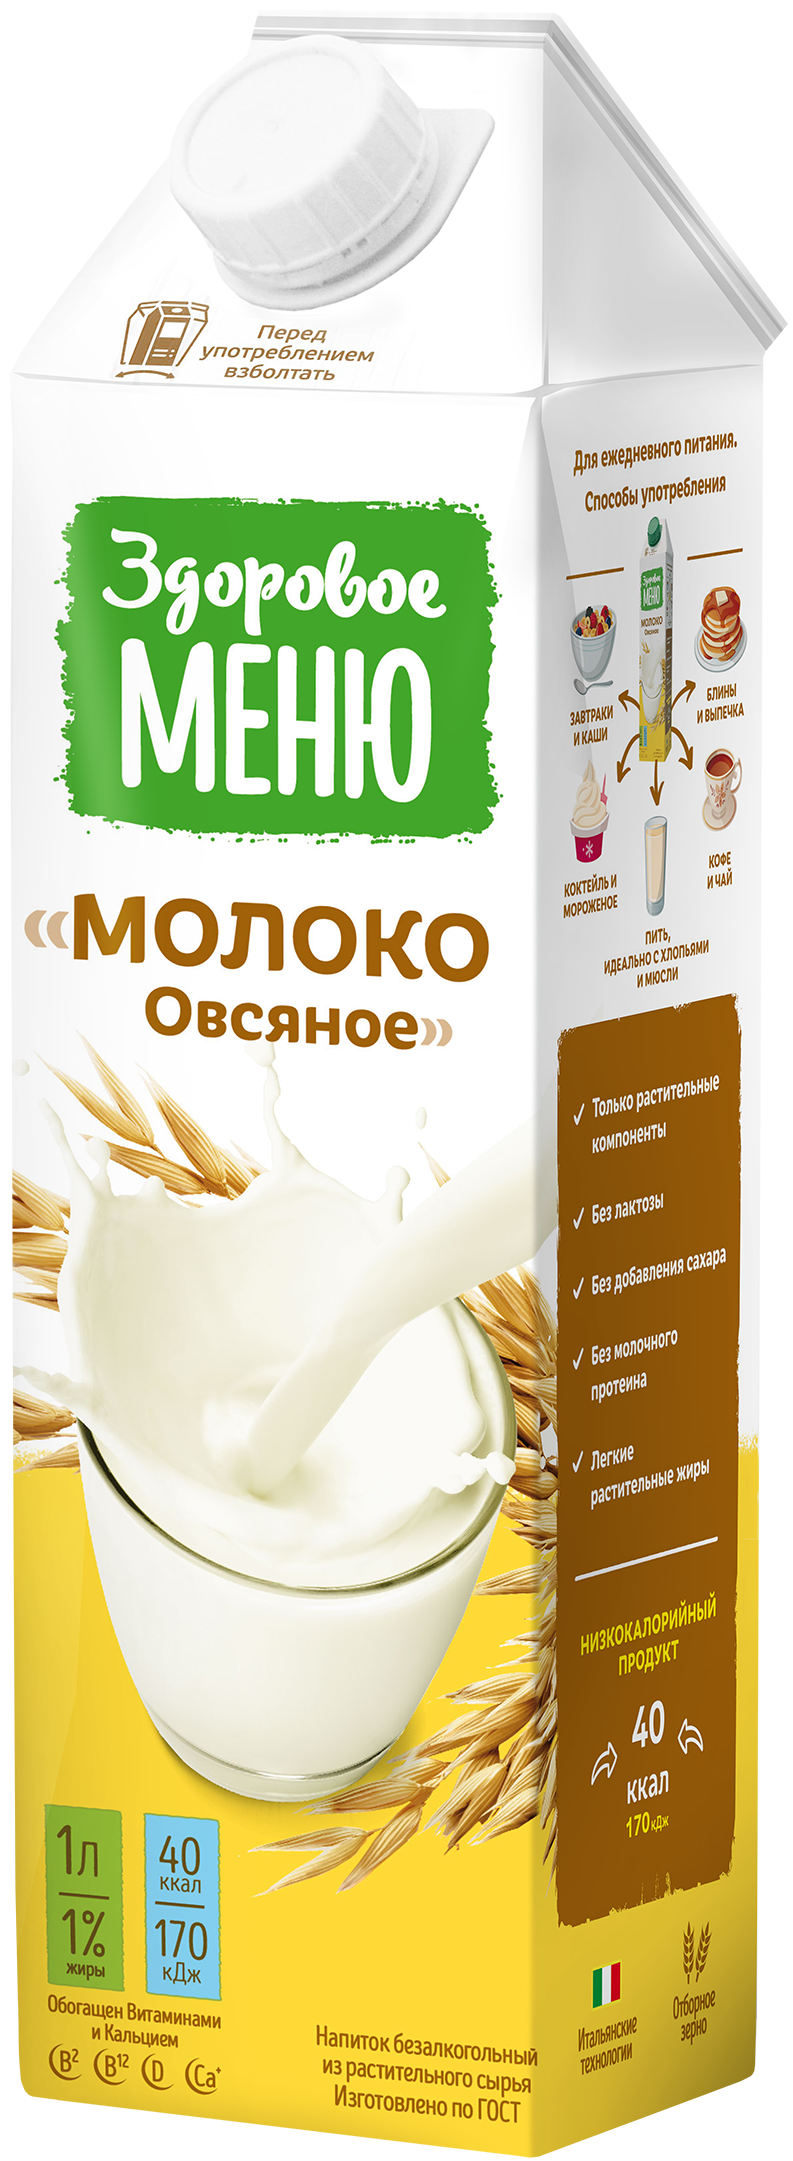 Молоко овсяное Здоровое Меню/1л.